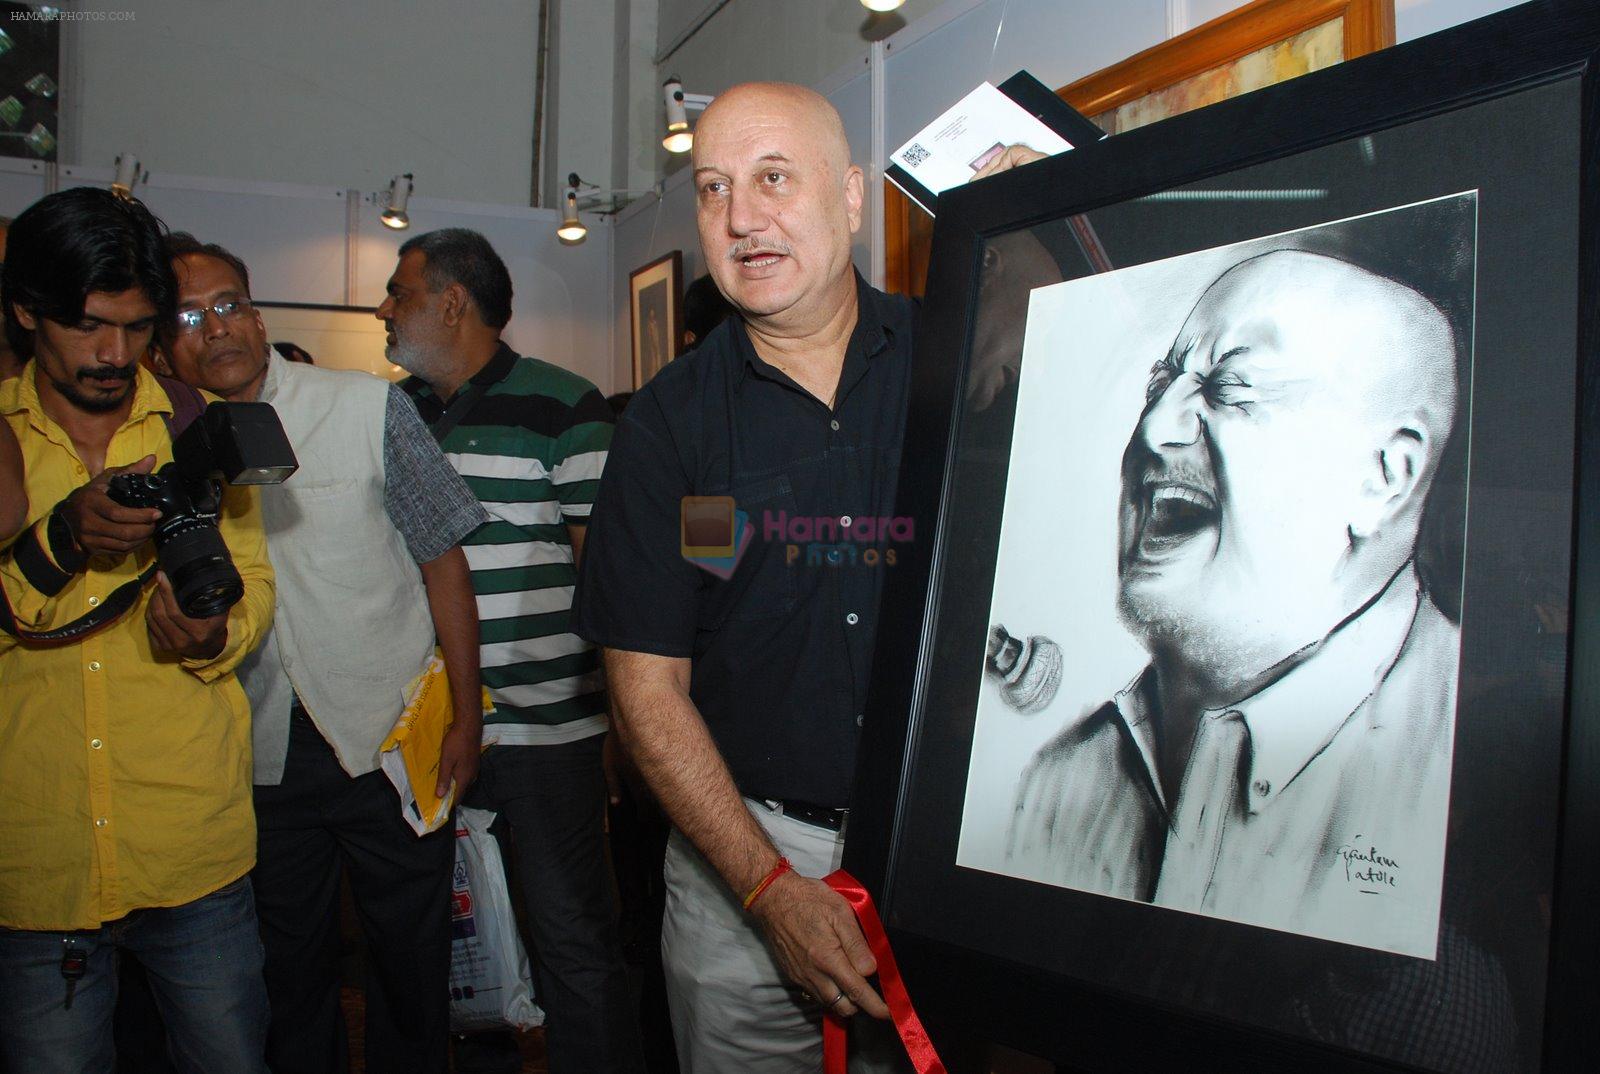 Anupam Kher inaugurates India Art fest in Nehru Centre on 27th Nov 2014